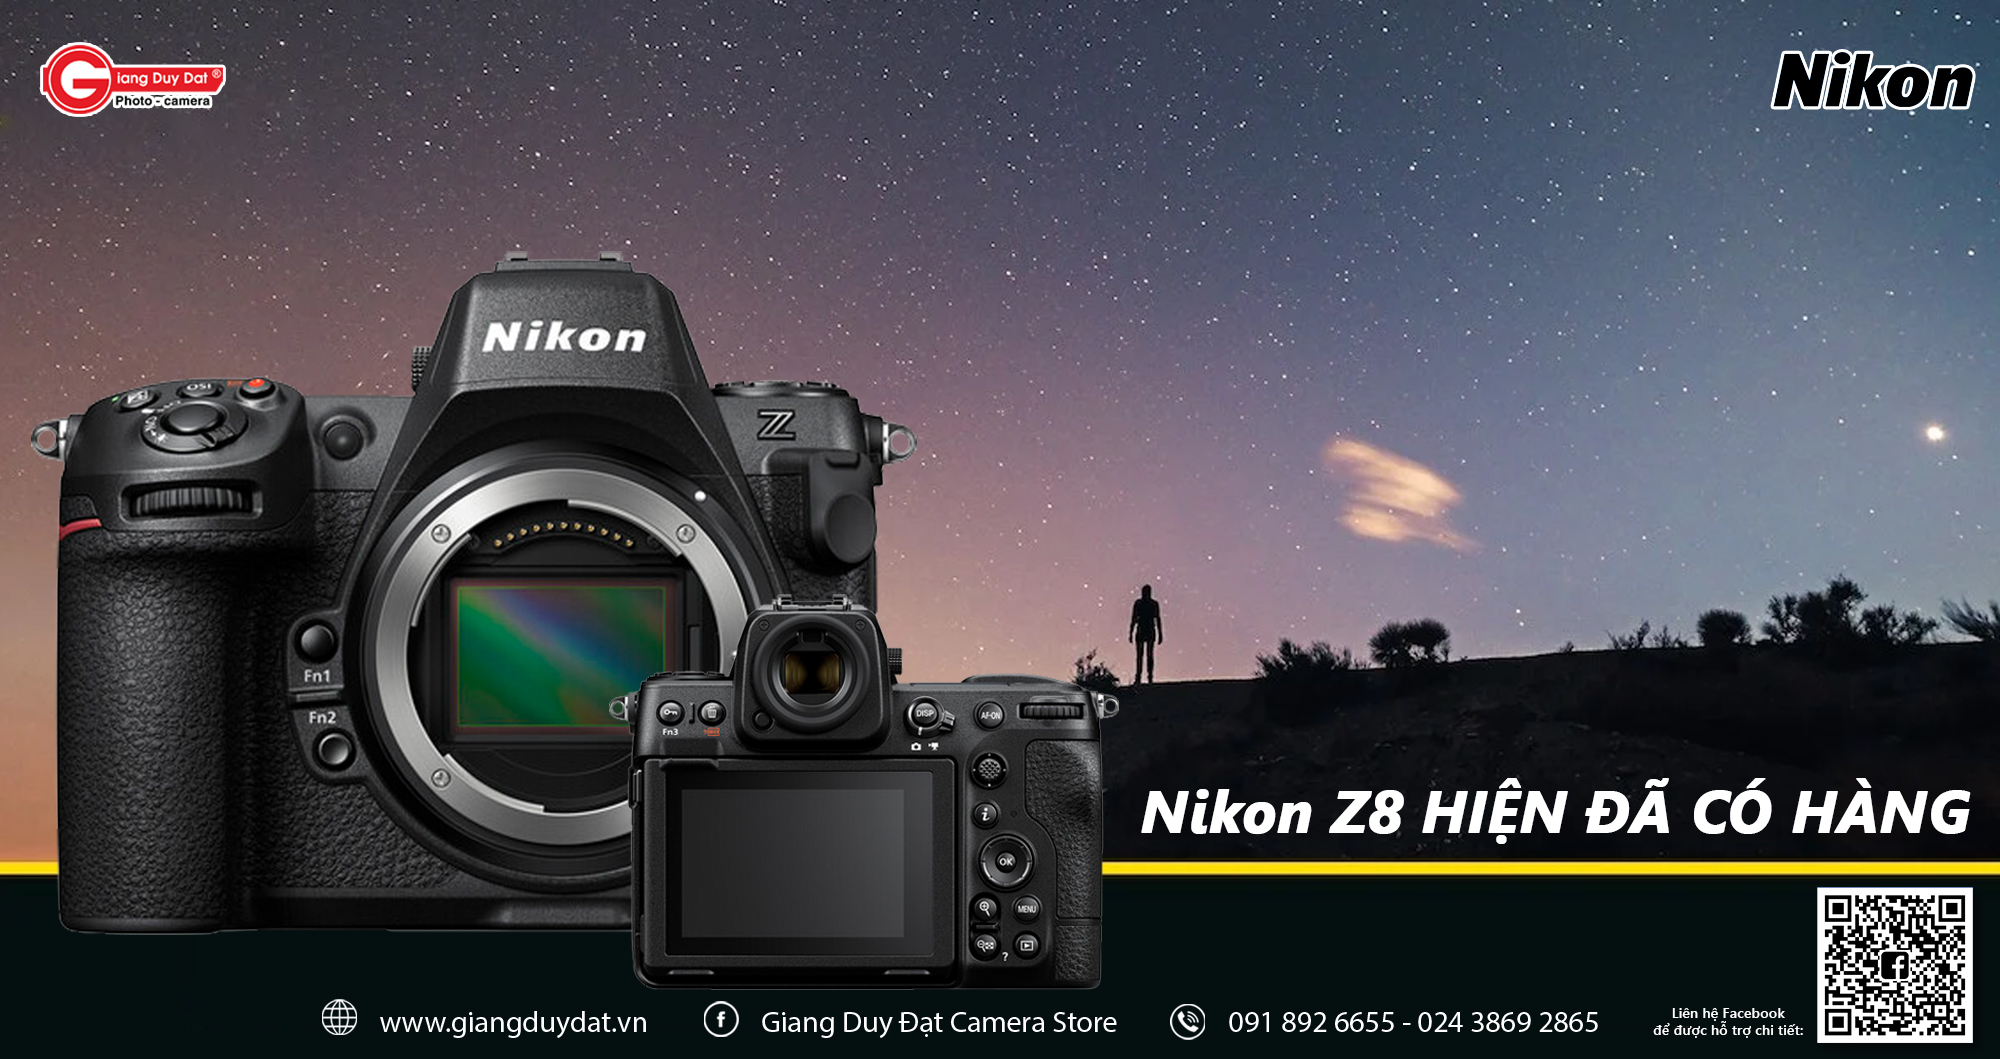 Pre-order Nikon Z8